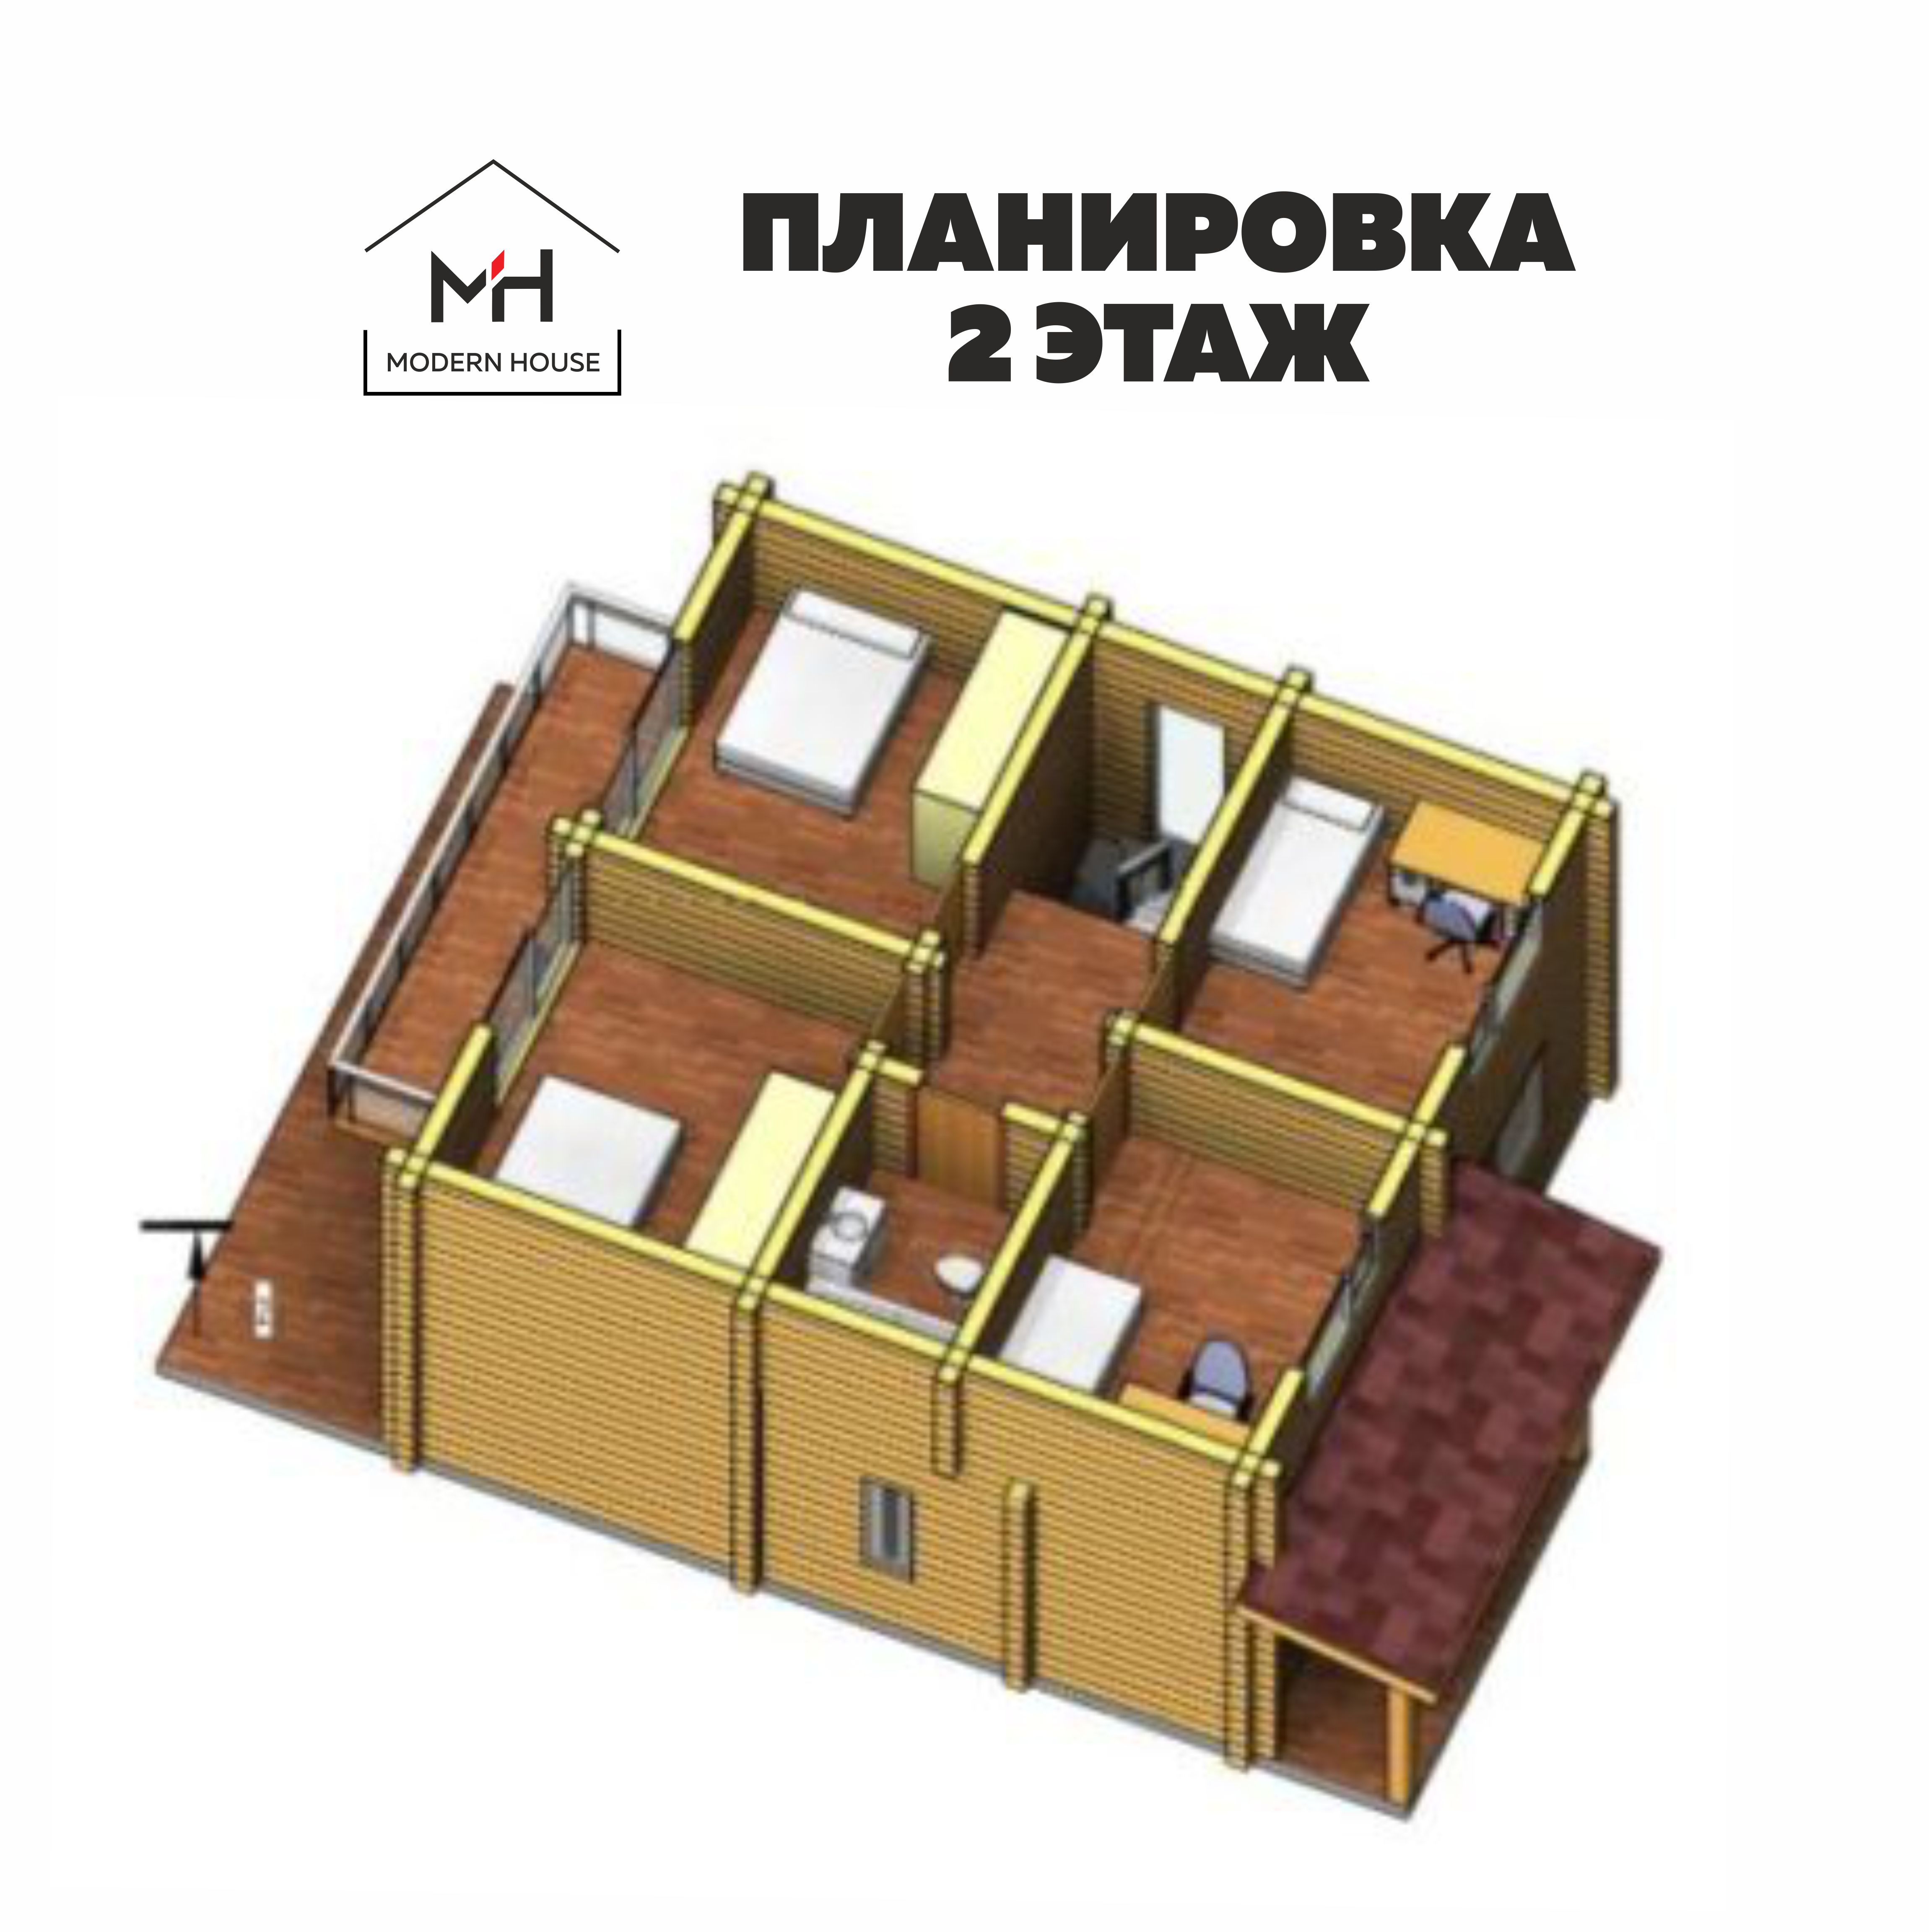 Строительная компания Modern House, г. Владивосток